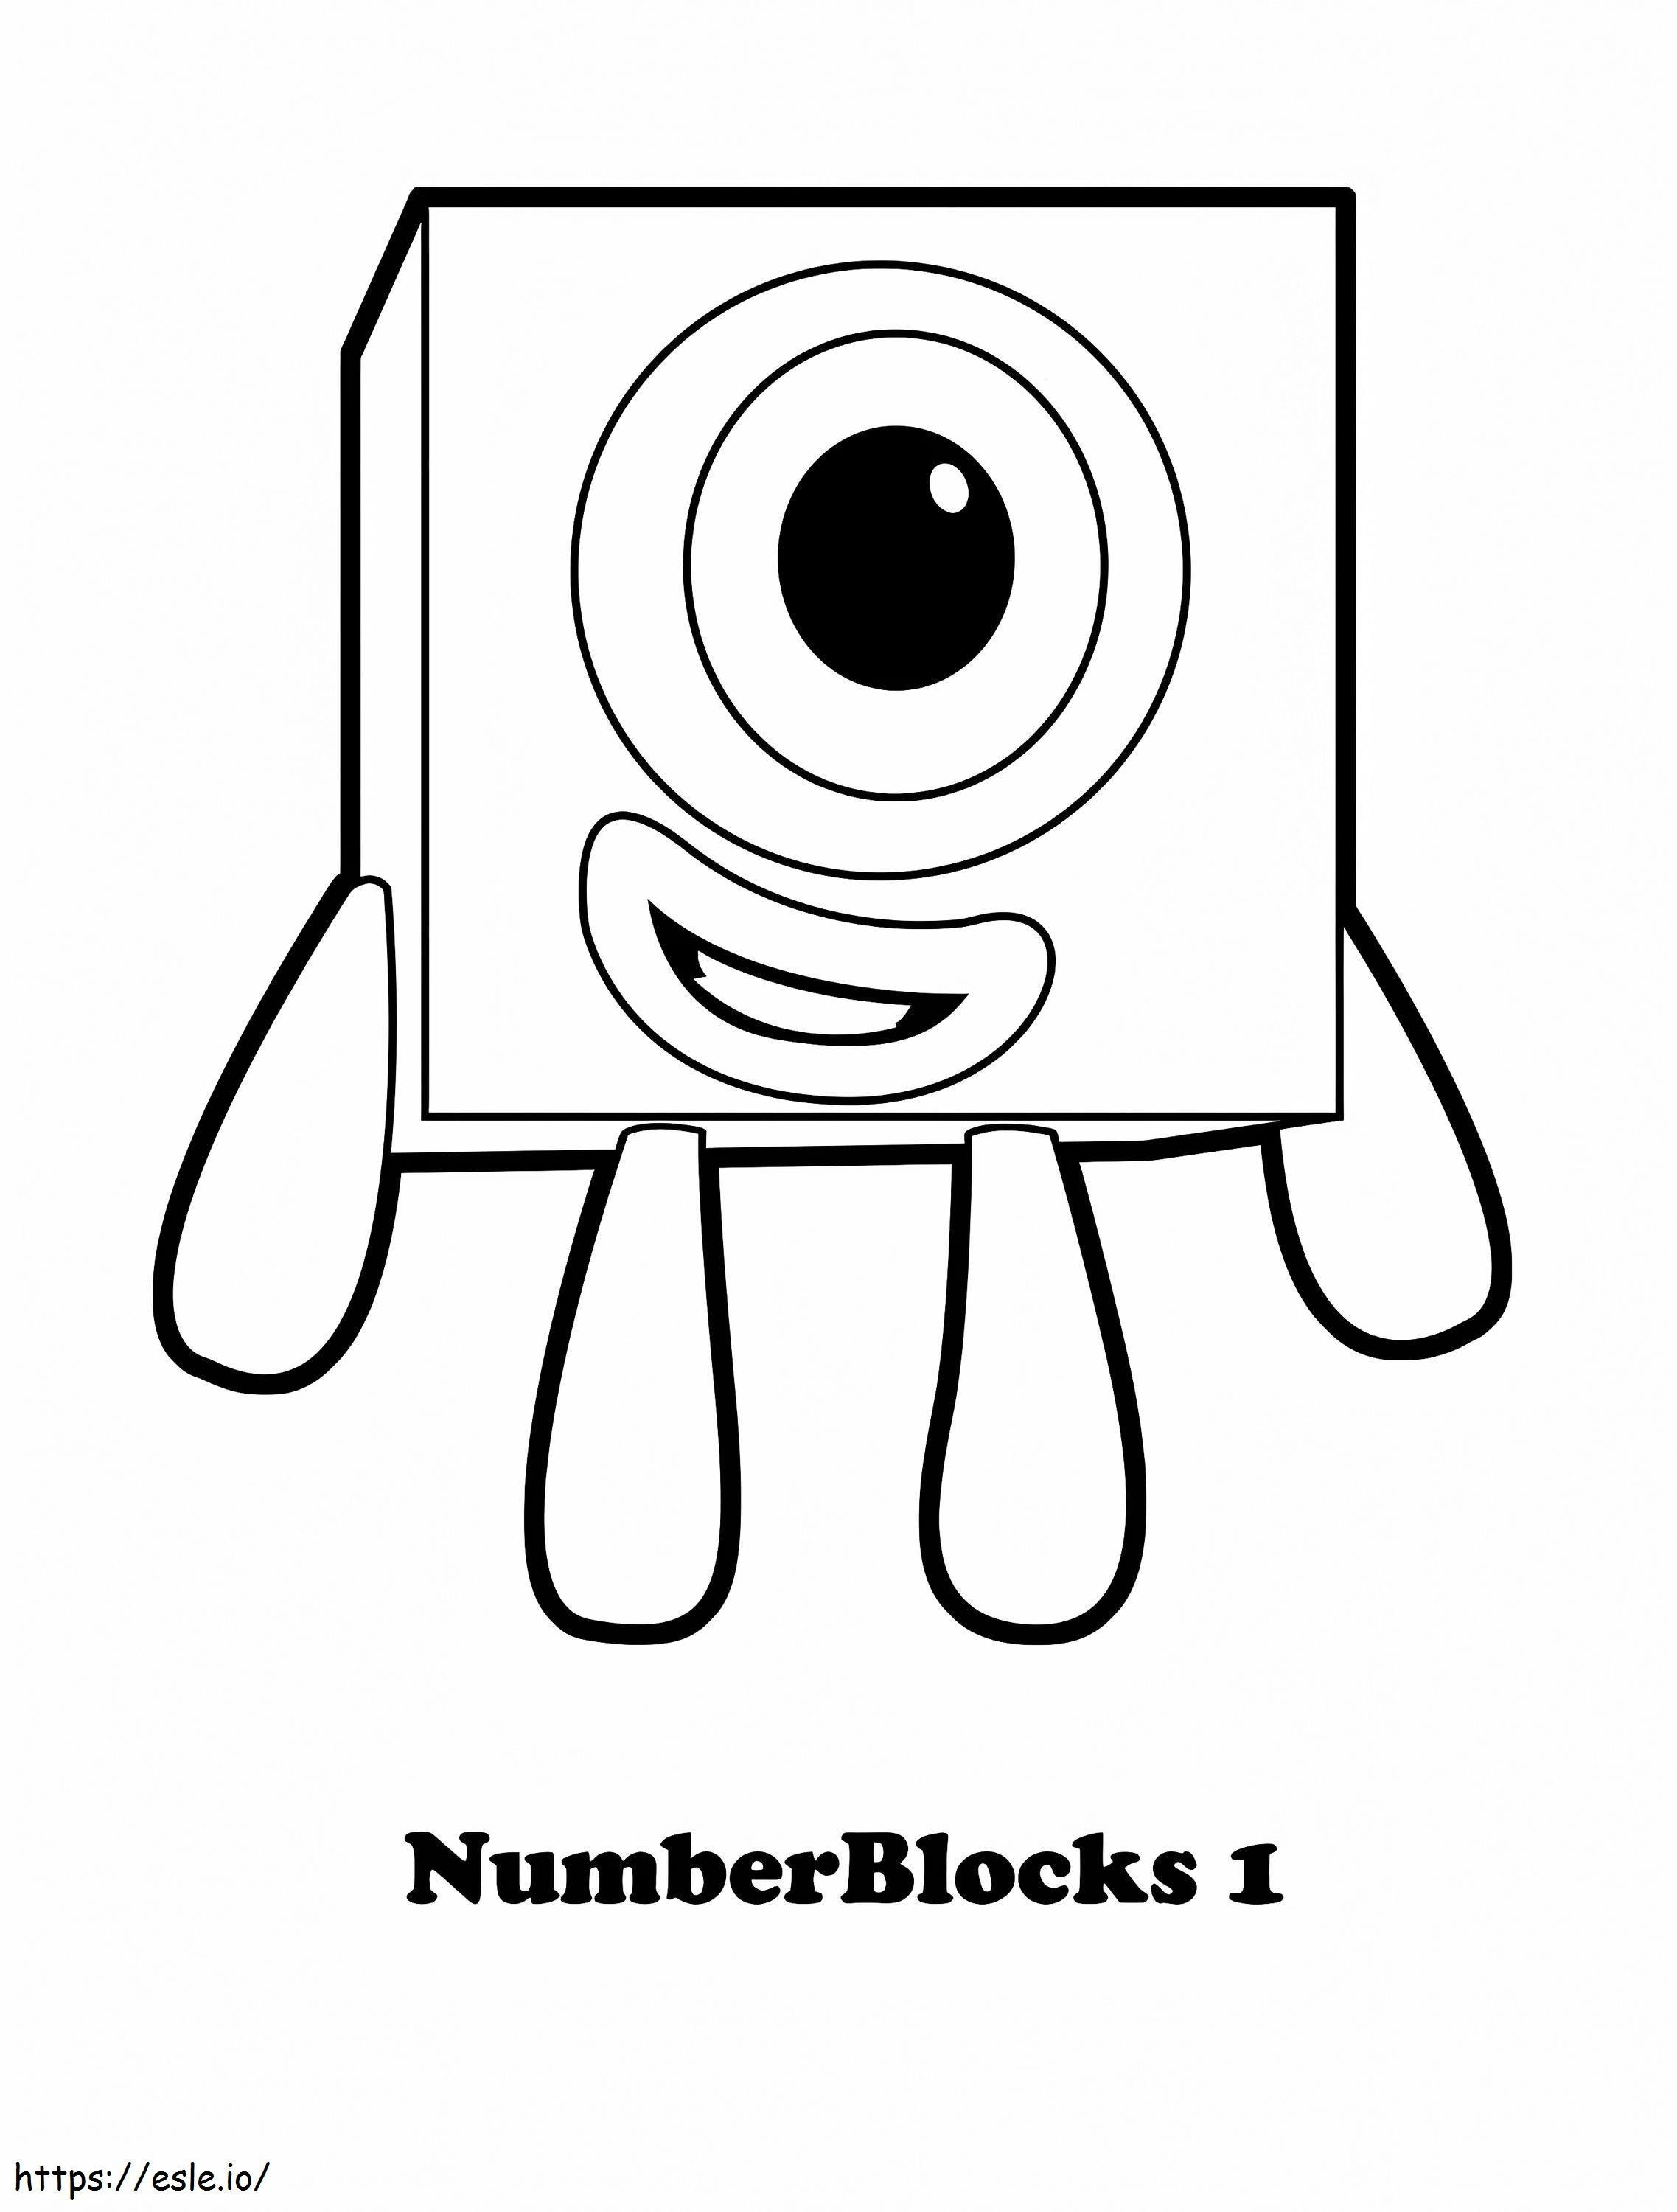 1581563586 Mainan Rumah Menyenangkan Blok Nomor Mewarnai Untuk Anak-anak Nomor Buku Pemadam Kebakaran Gambar Mesin Pemadam Kebakaran Untuk Mewarnai Satu Lembar Mewarnai Pemadam Kebakaran Berskala 1 Gambar Mewarnai